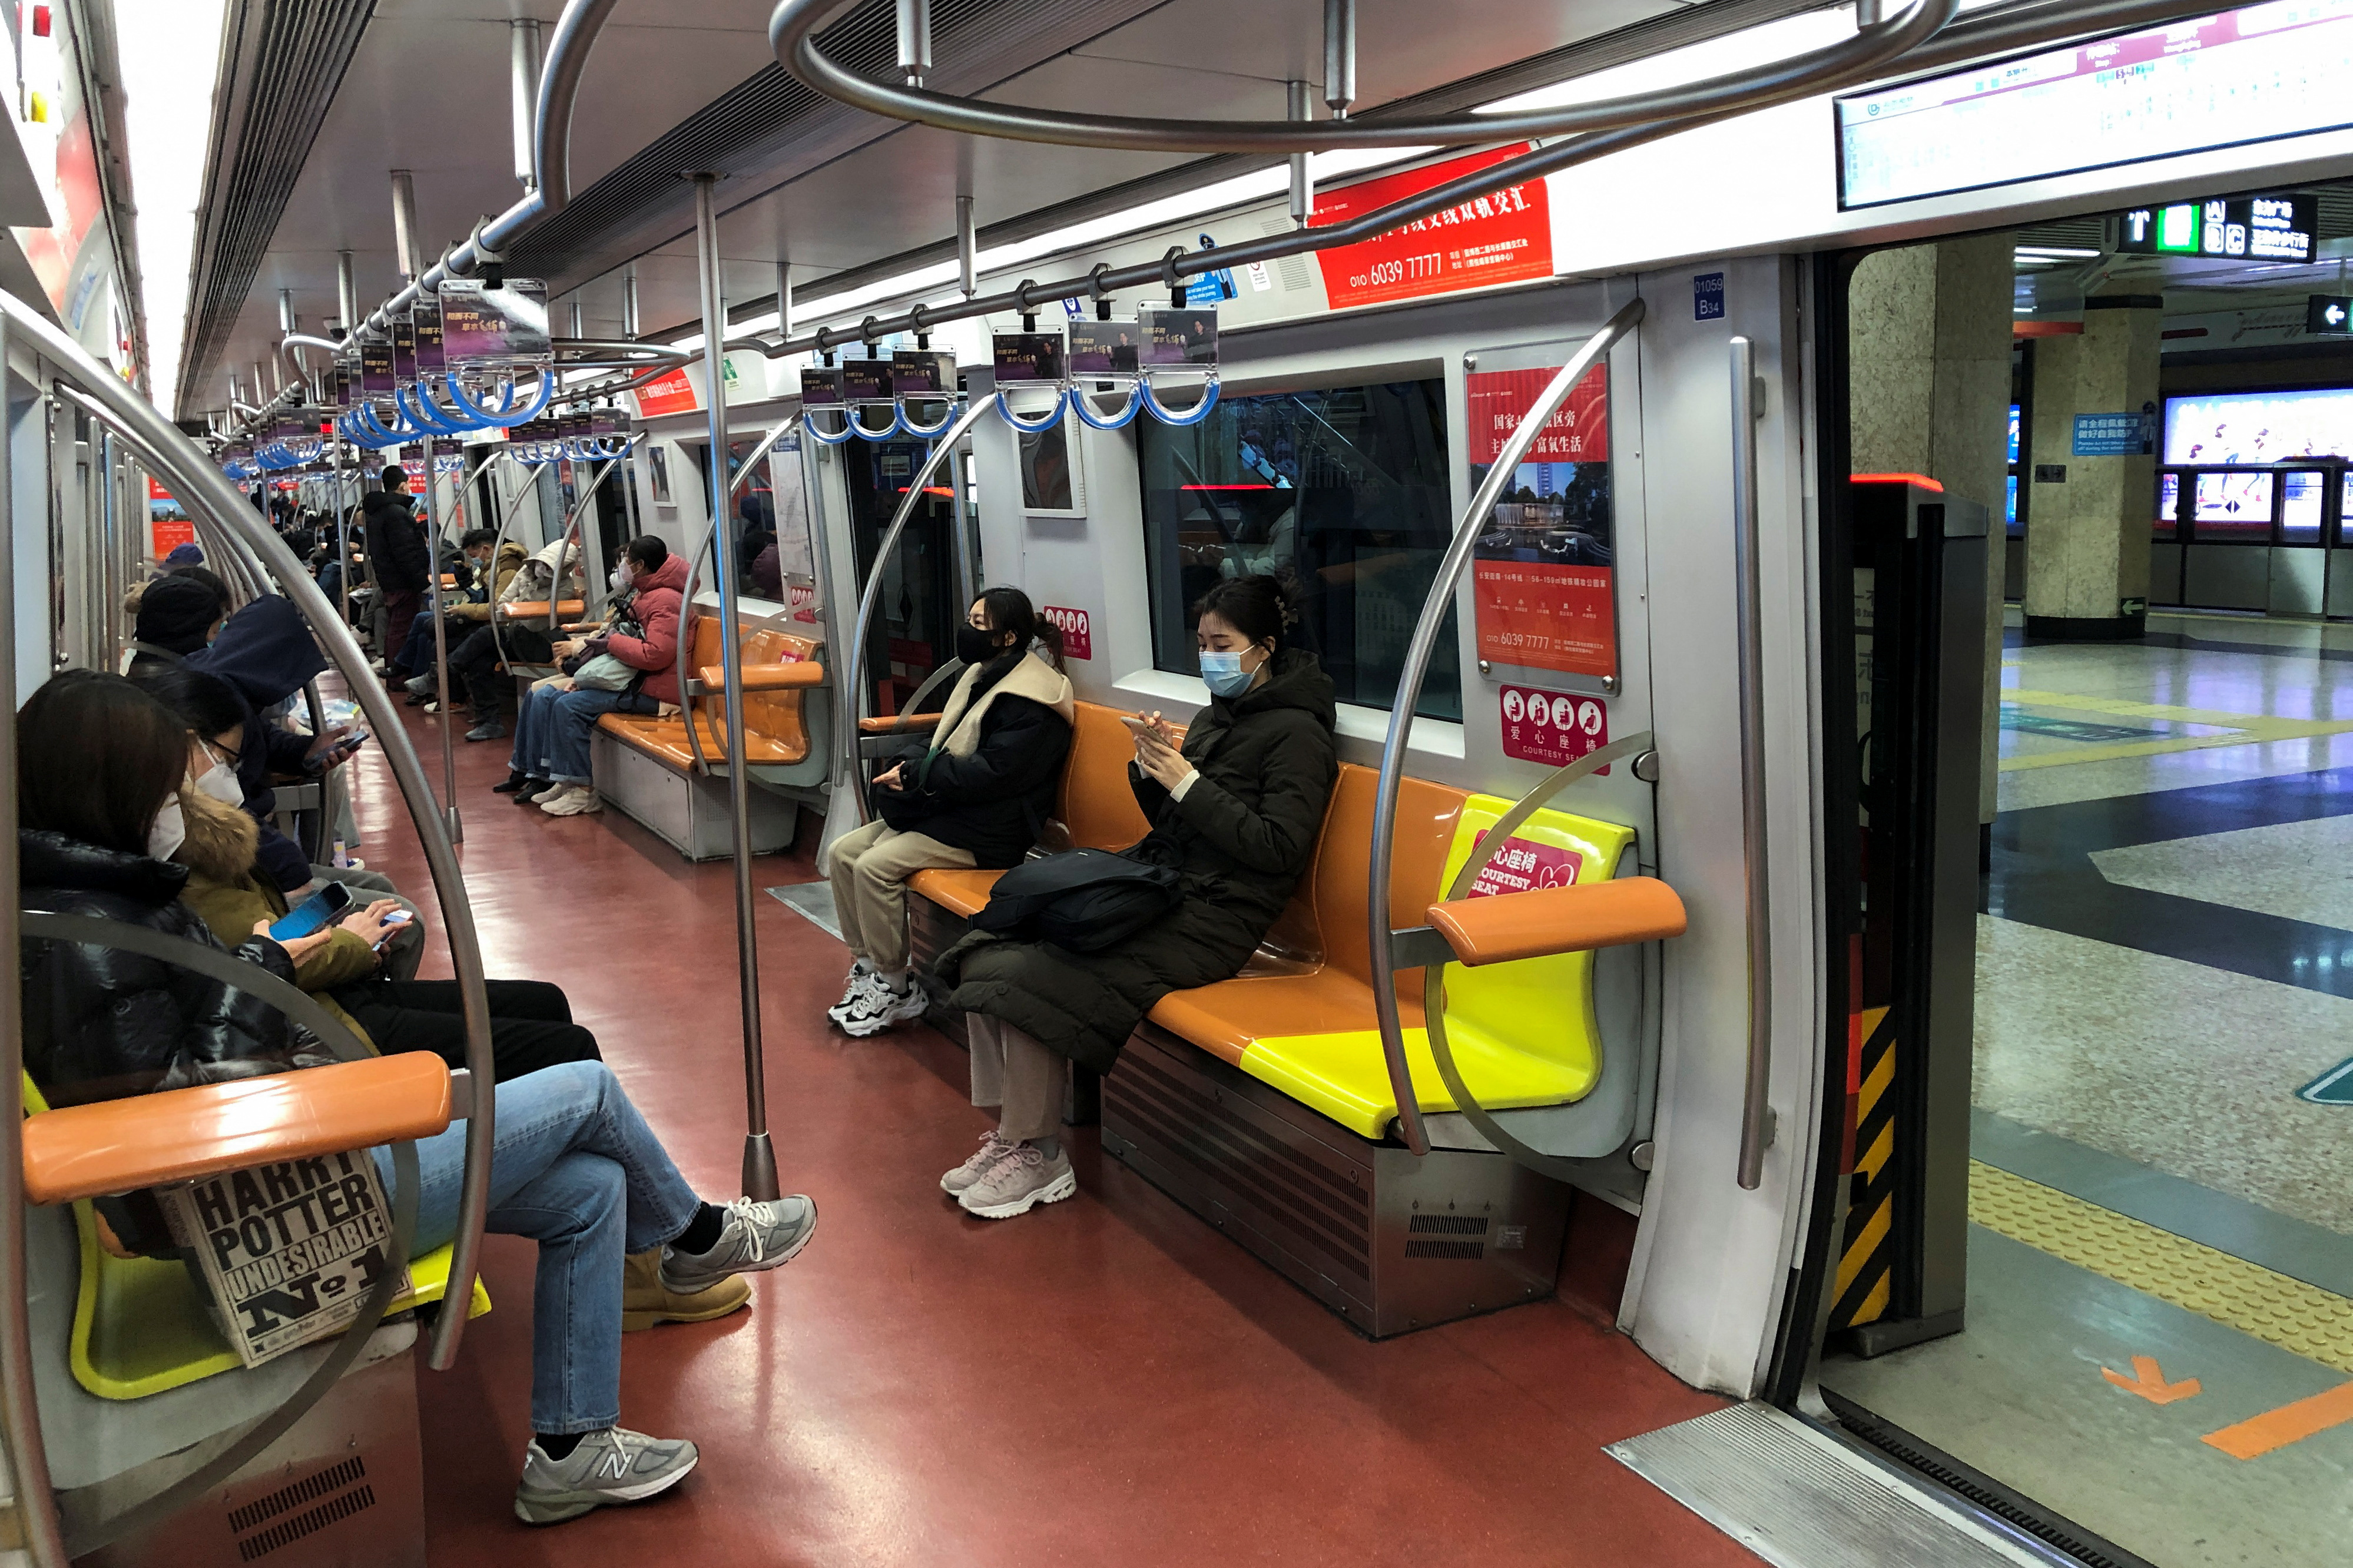 Personas viajan en metro después de que el régimen flexibilizara las restricciones relativas a la enfermedad por coronavirus (COVID-19), en Beijing, China, el 9 de diciembre de 2022. REUTERS/Ryan Woo